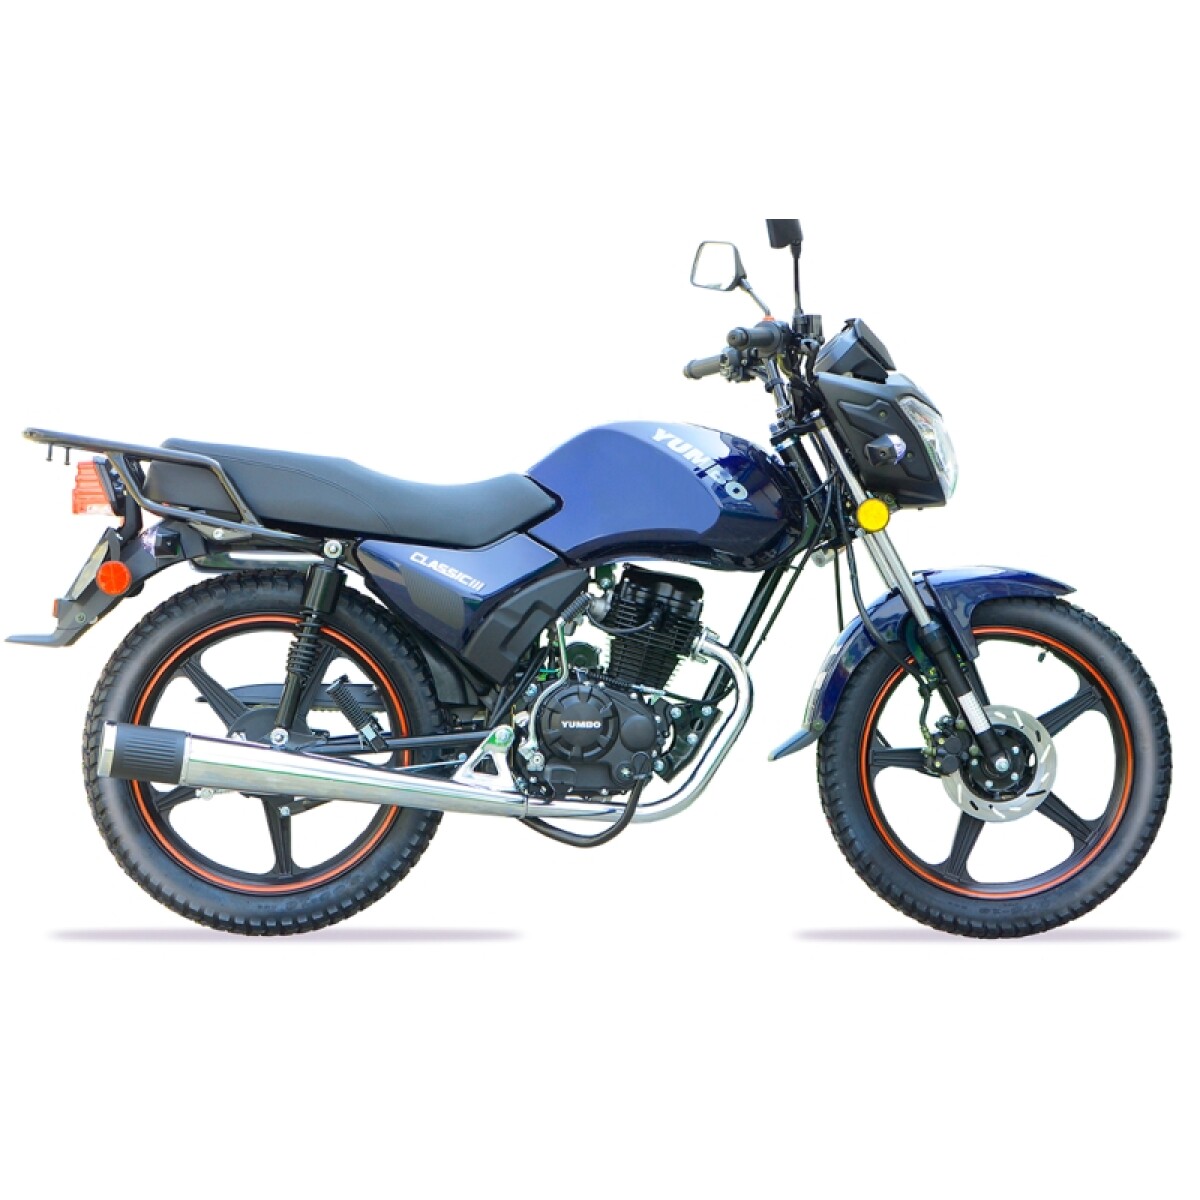 Moto Yumbo Calle Classic 125 Iii - Azul 